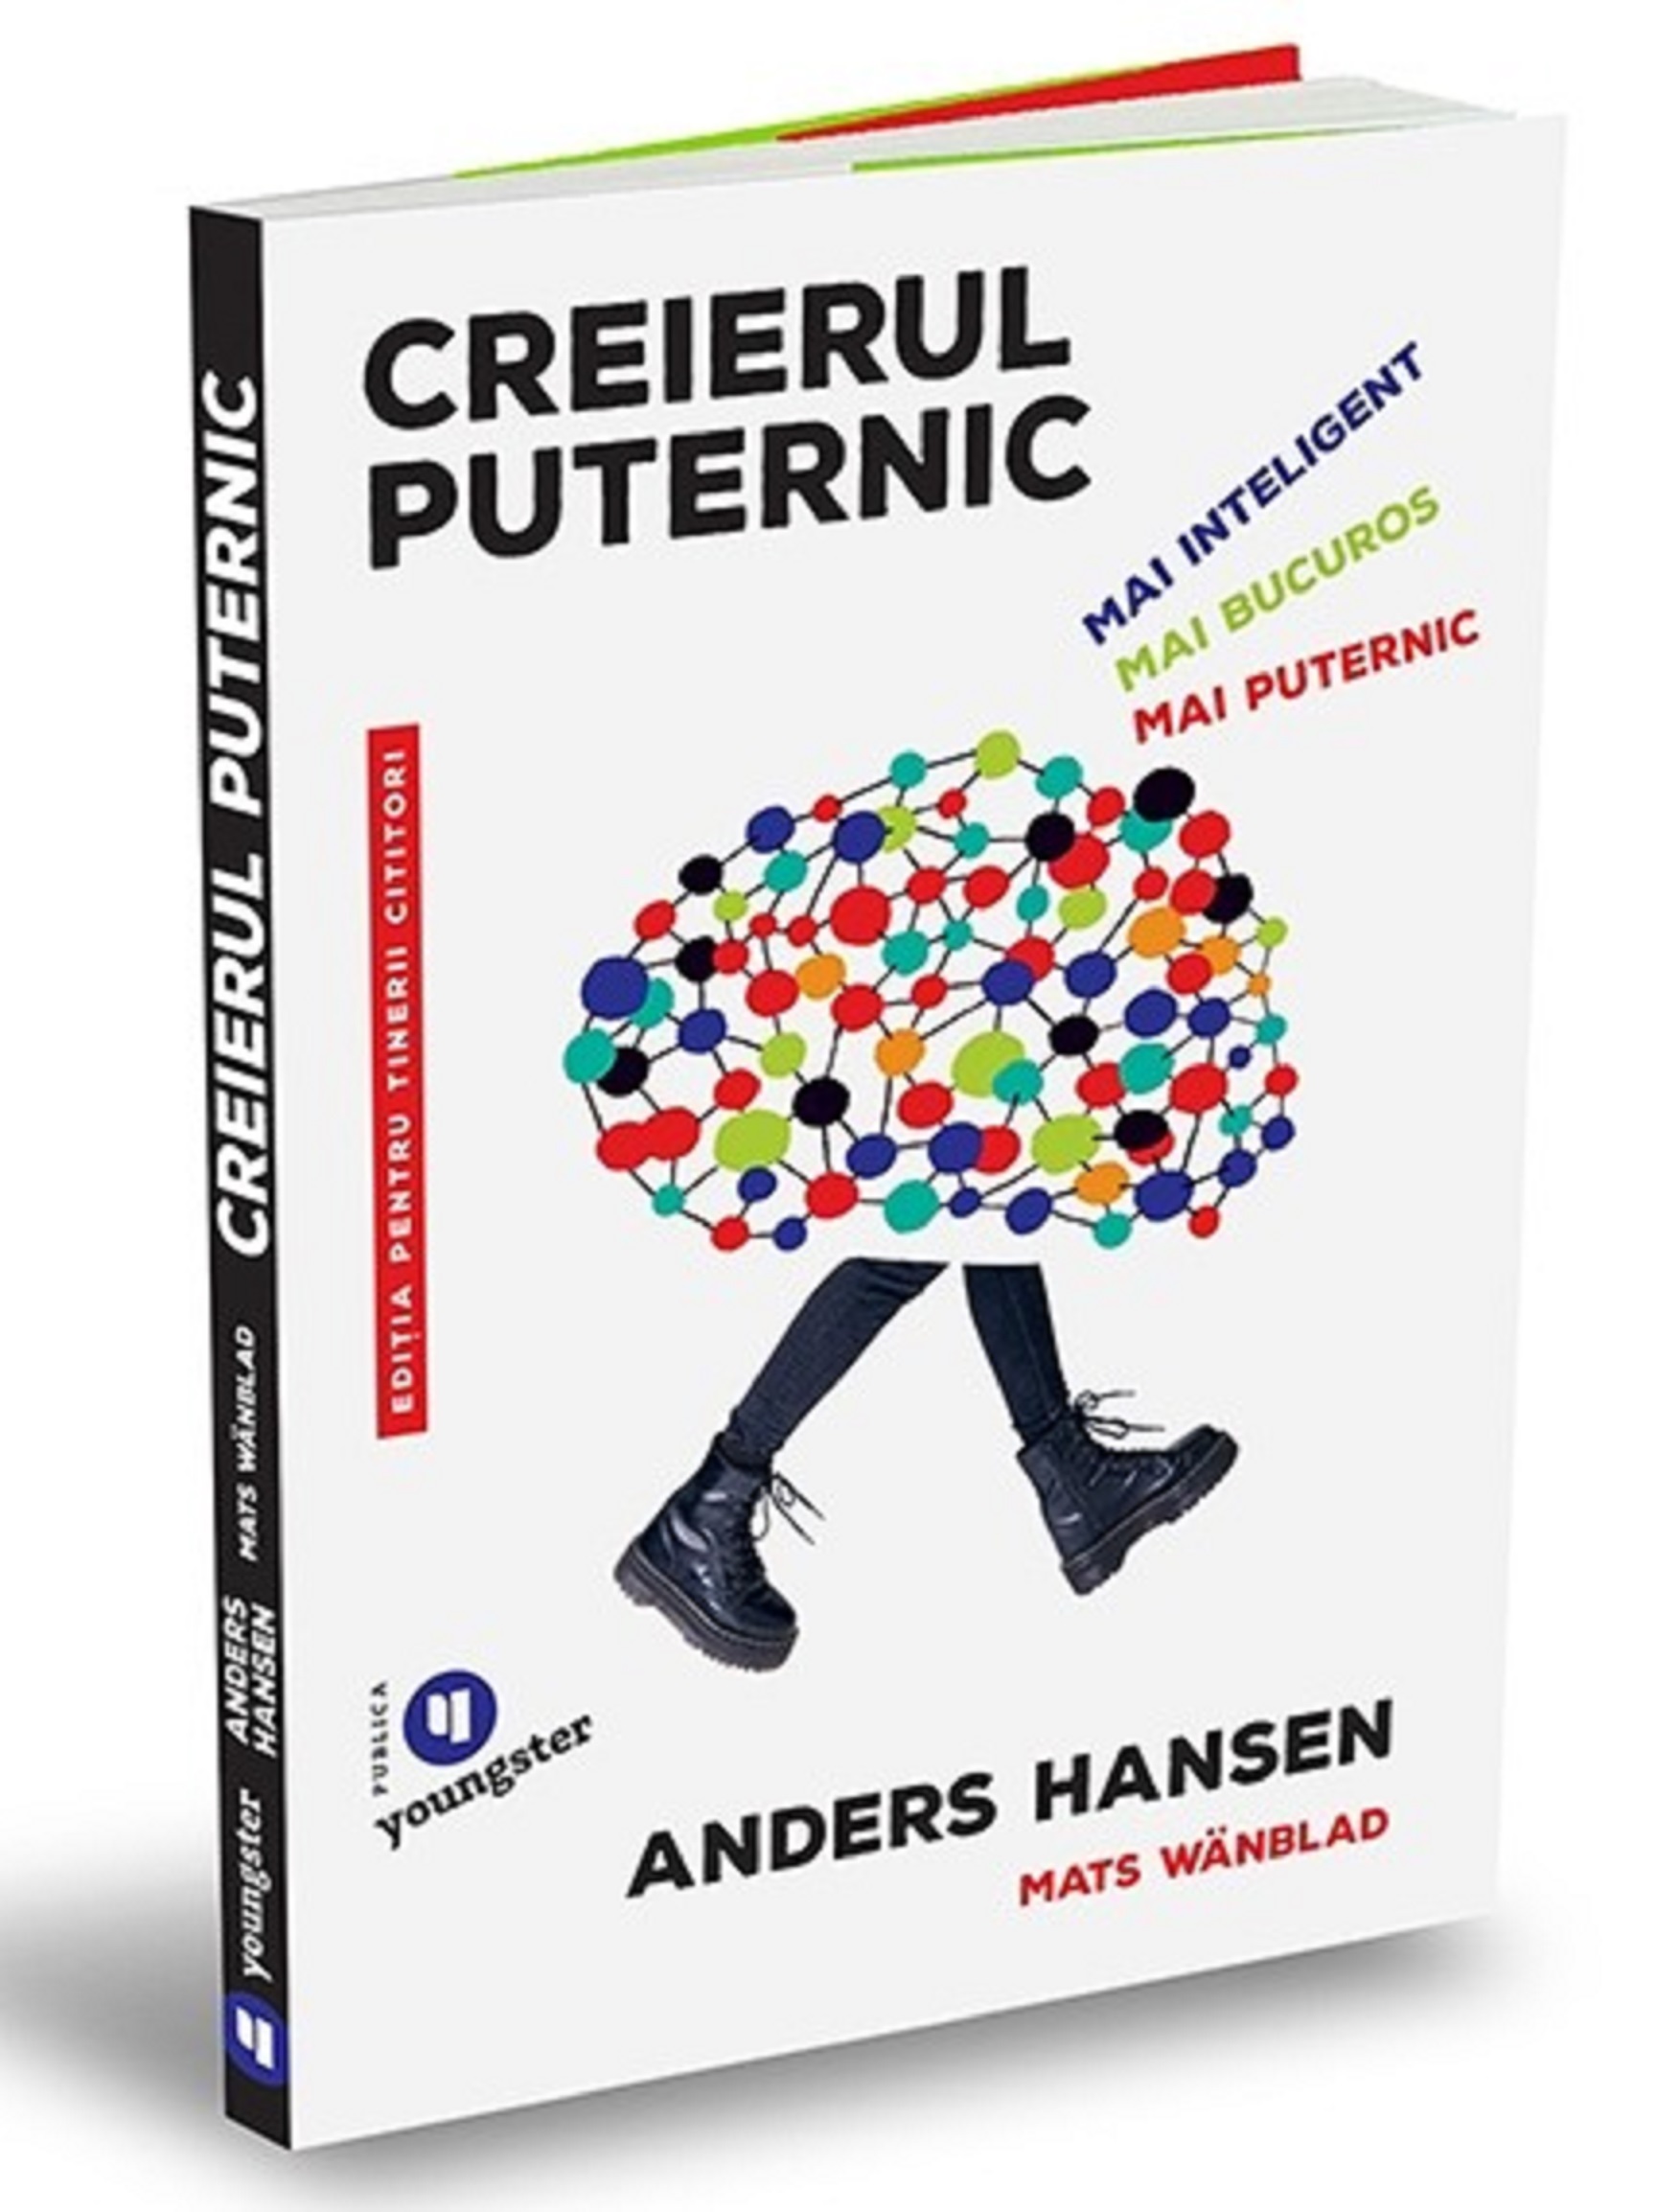 Creierul puternic | Anders Hansen, Mats Wanblad